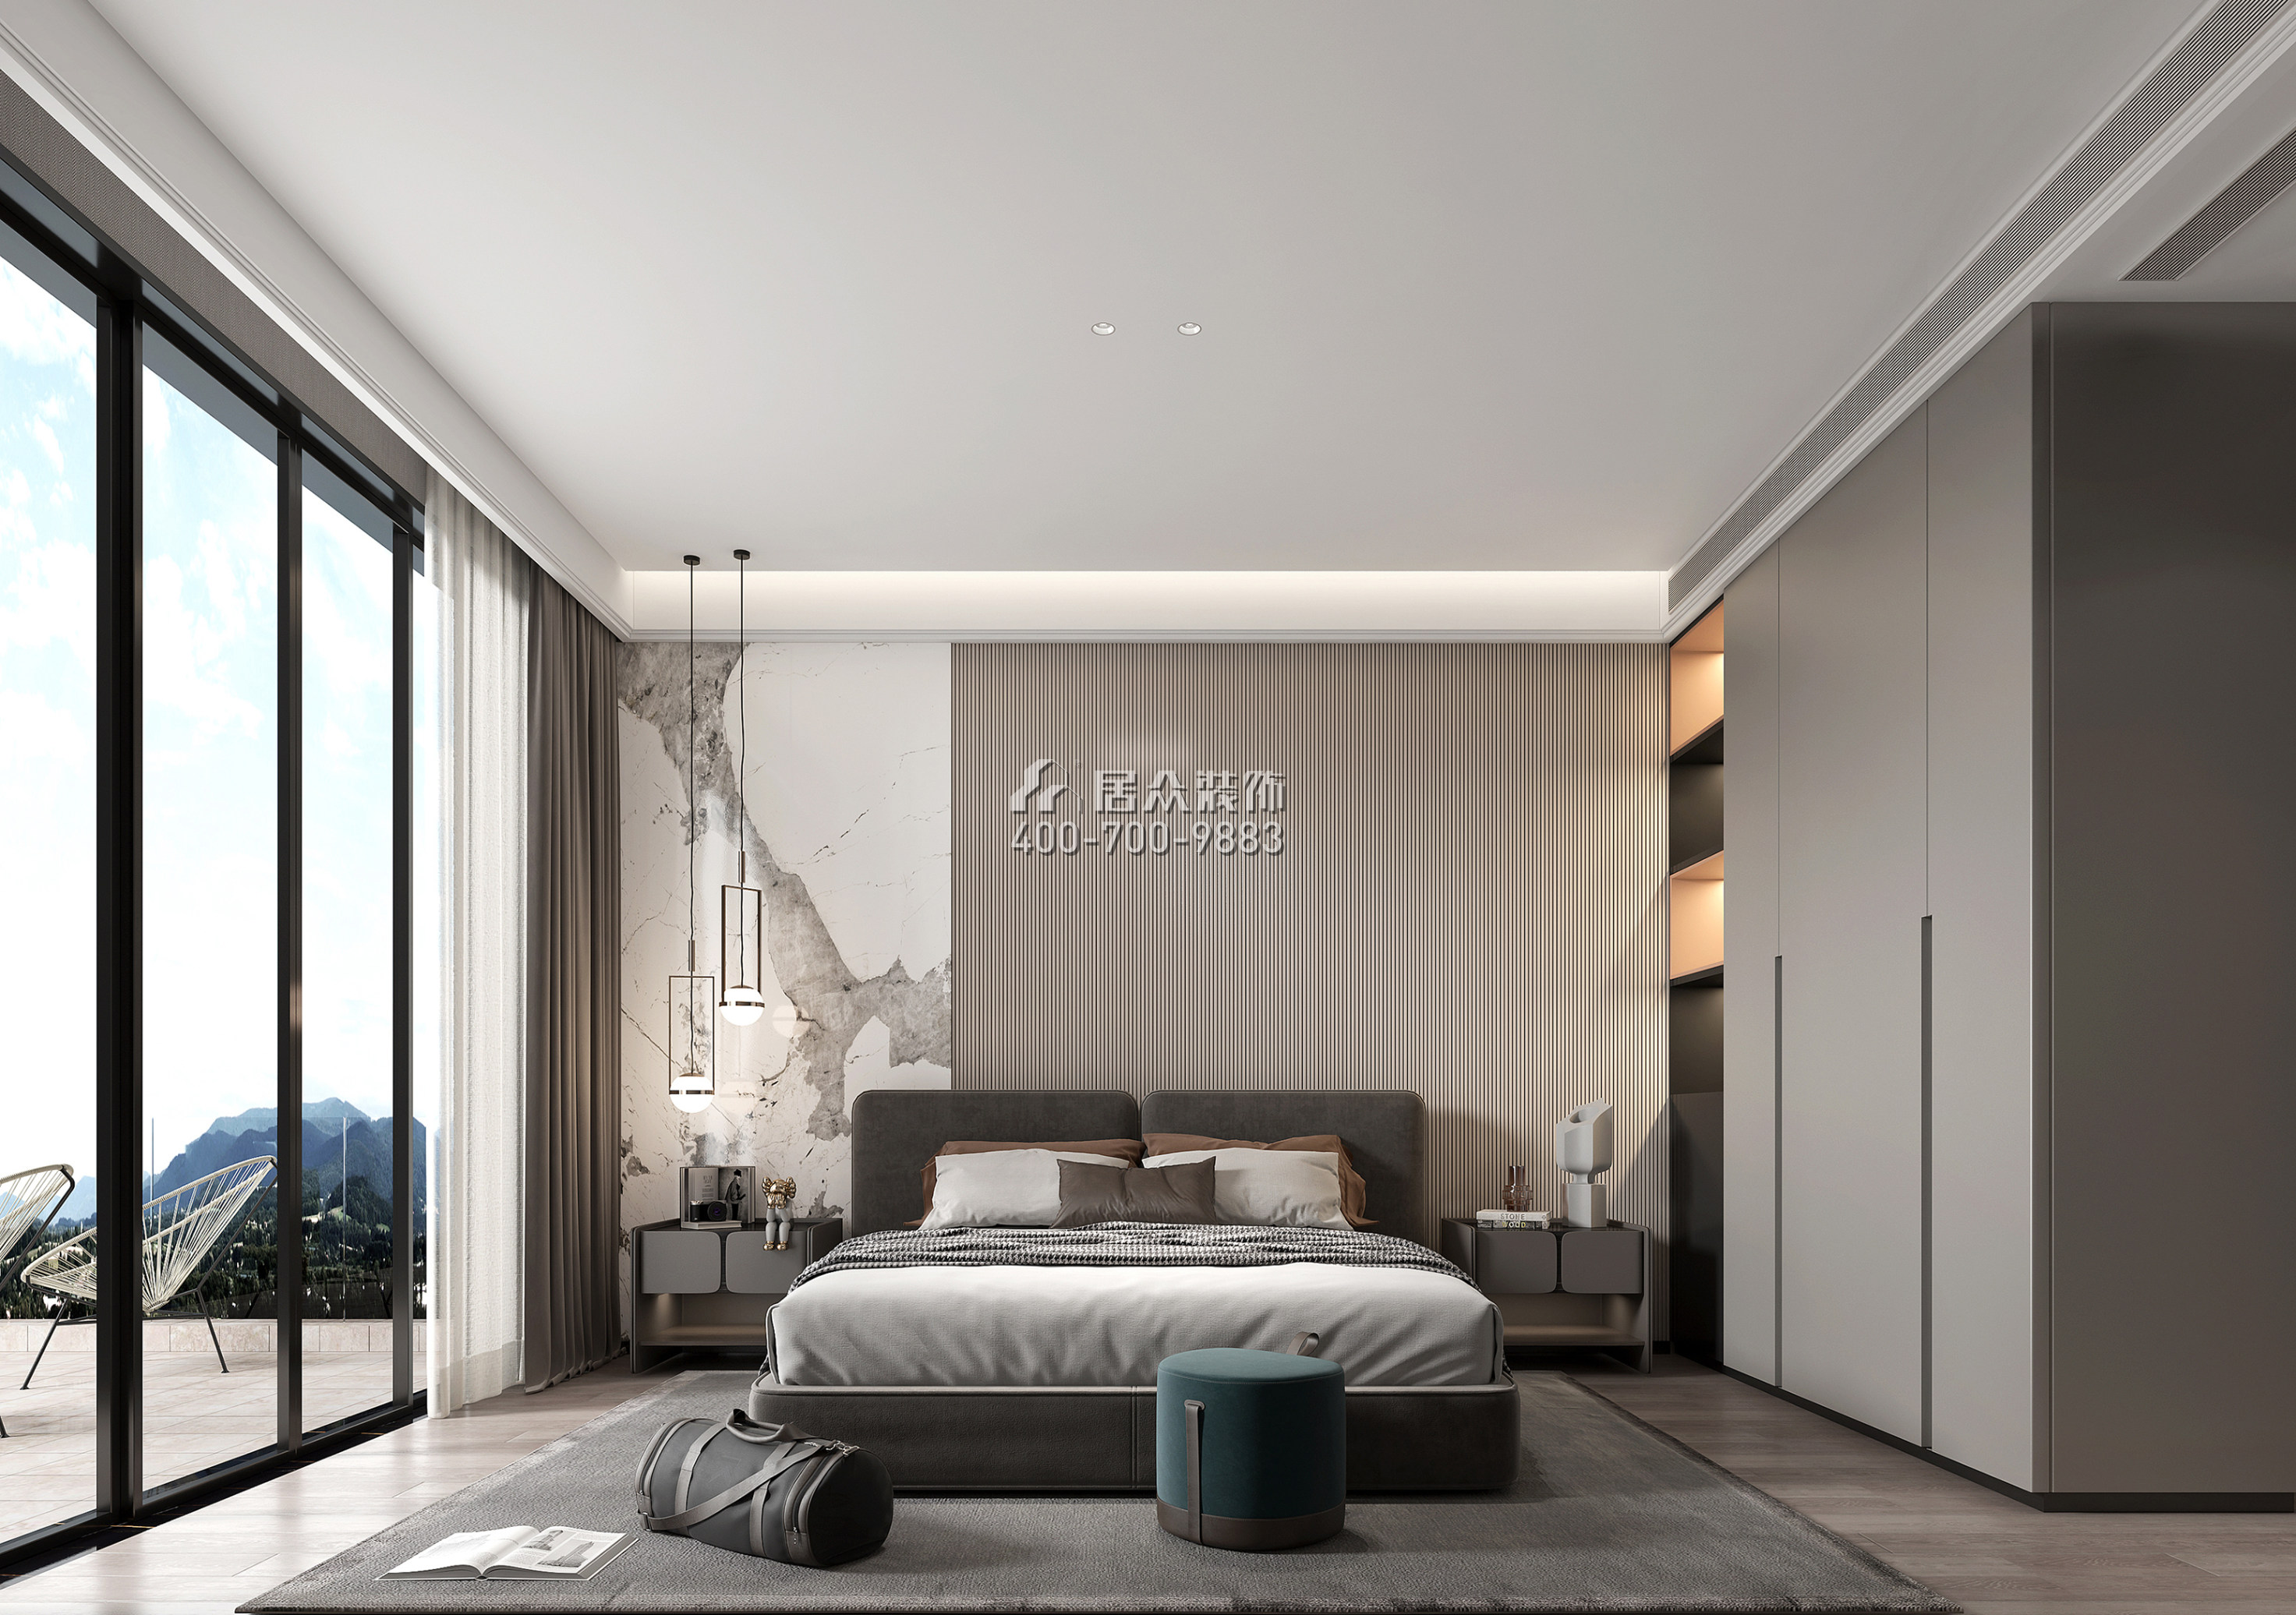 海逸豪庭900平方米现代简约风格别墅户型卧室装修效果图